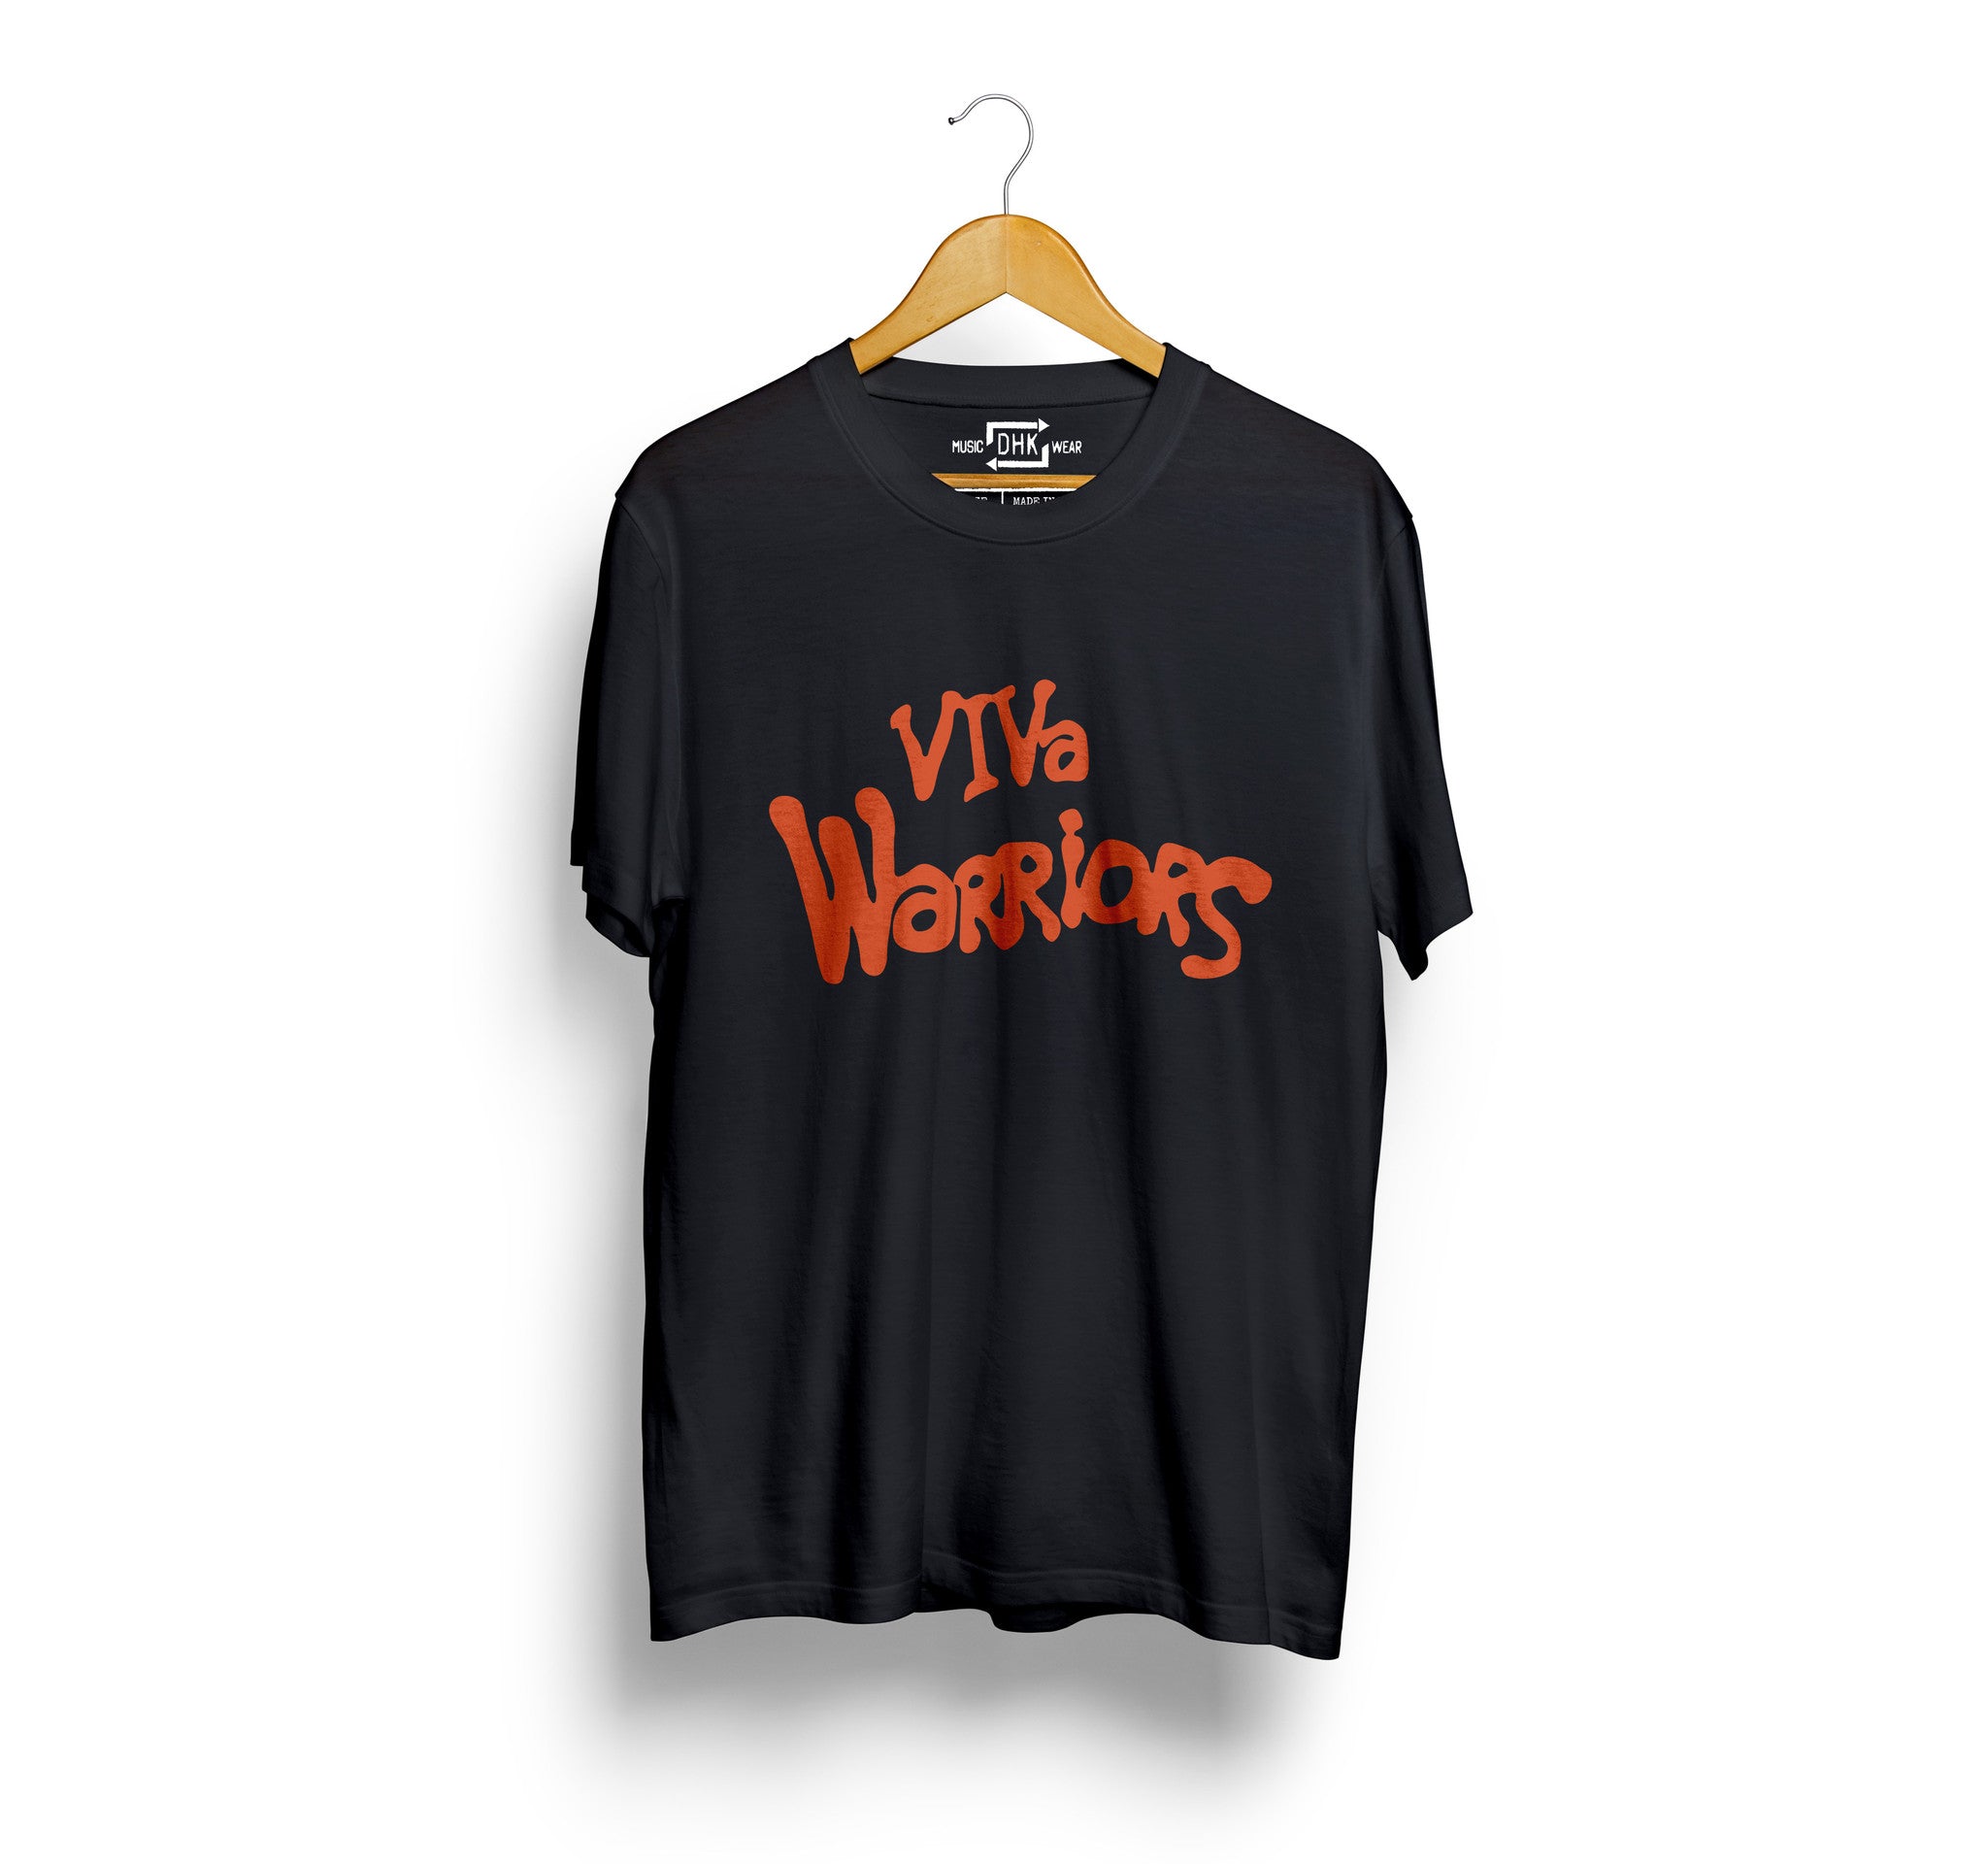 VIVA Warriors T-Shirt (Black or White)